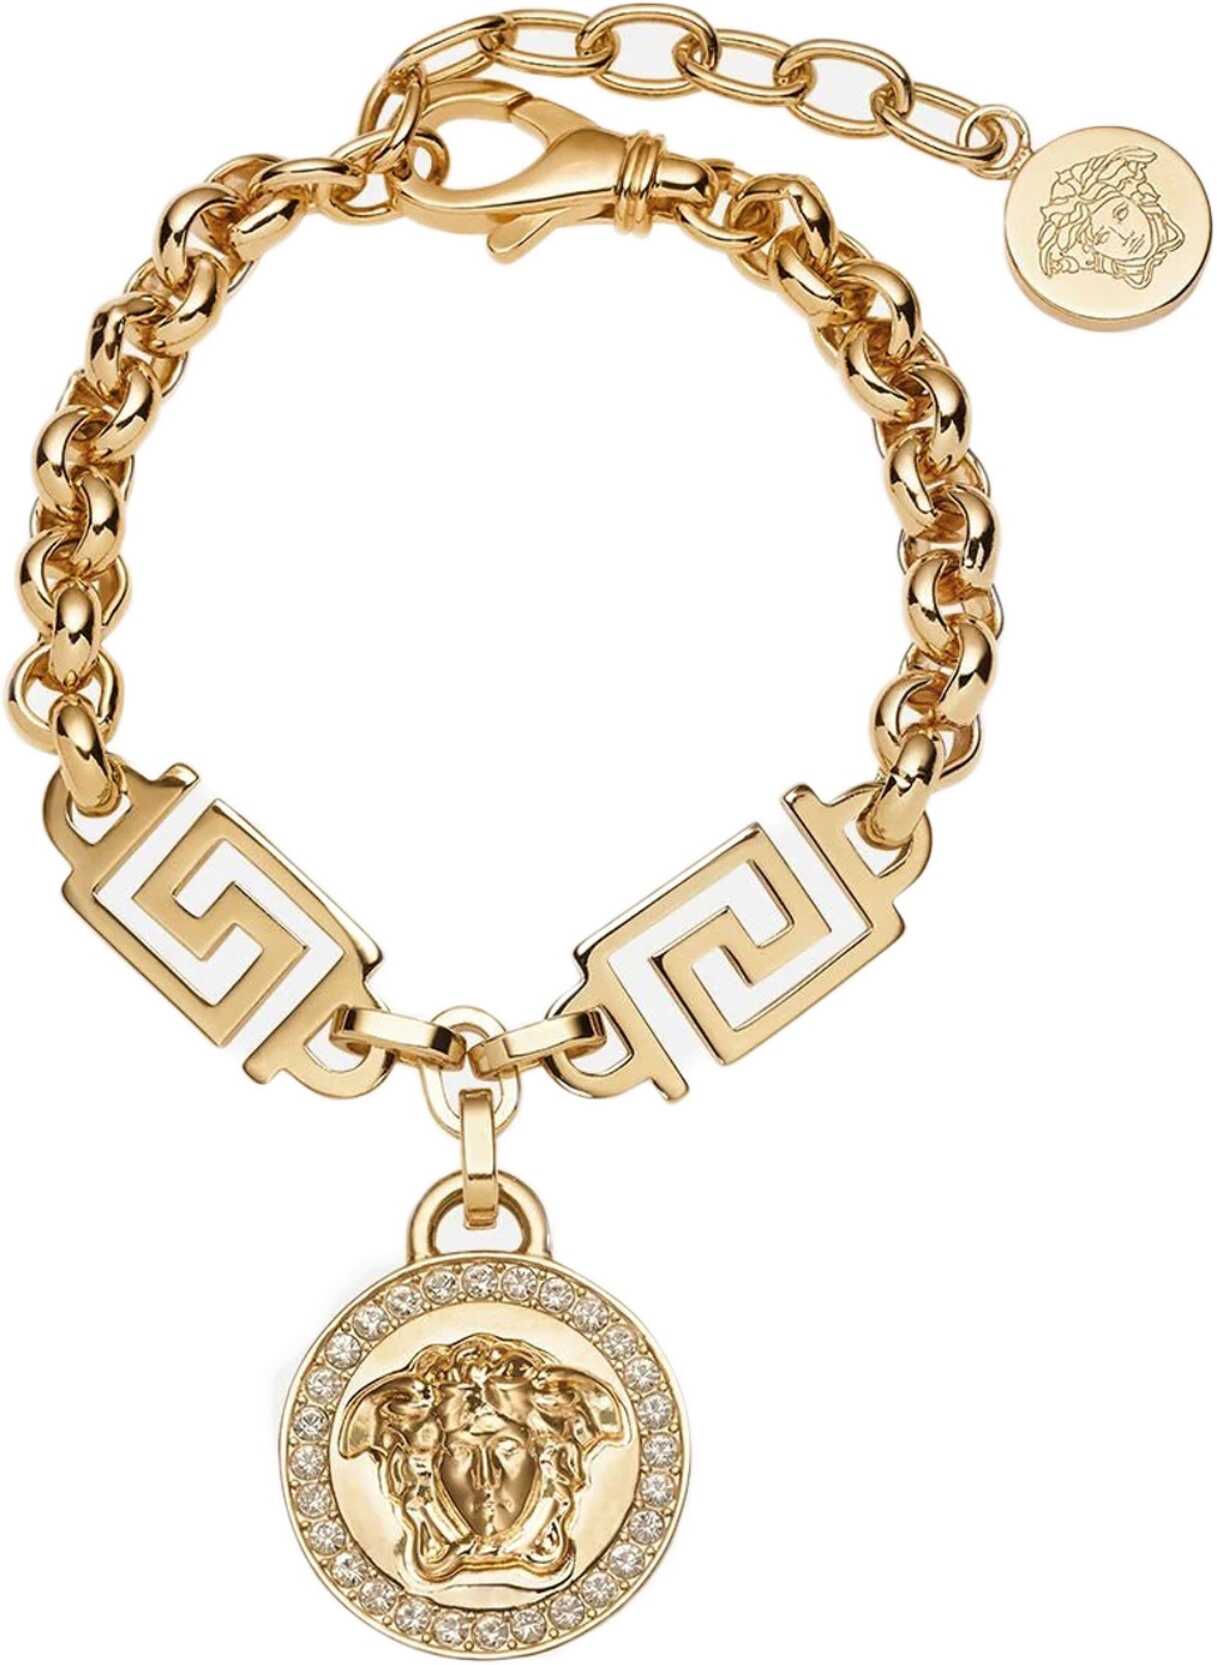 Versace The Greek Medusa Bracelet GOLD image9